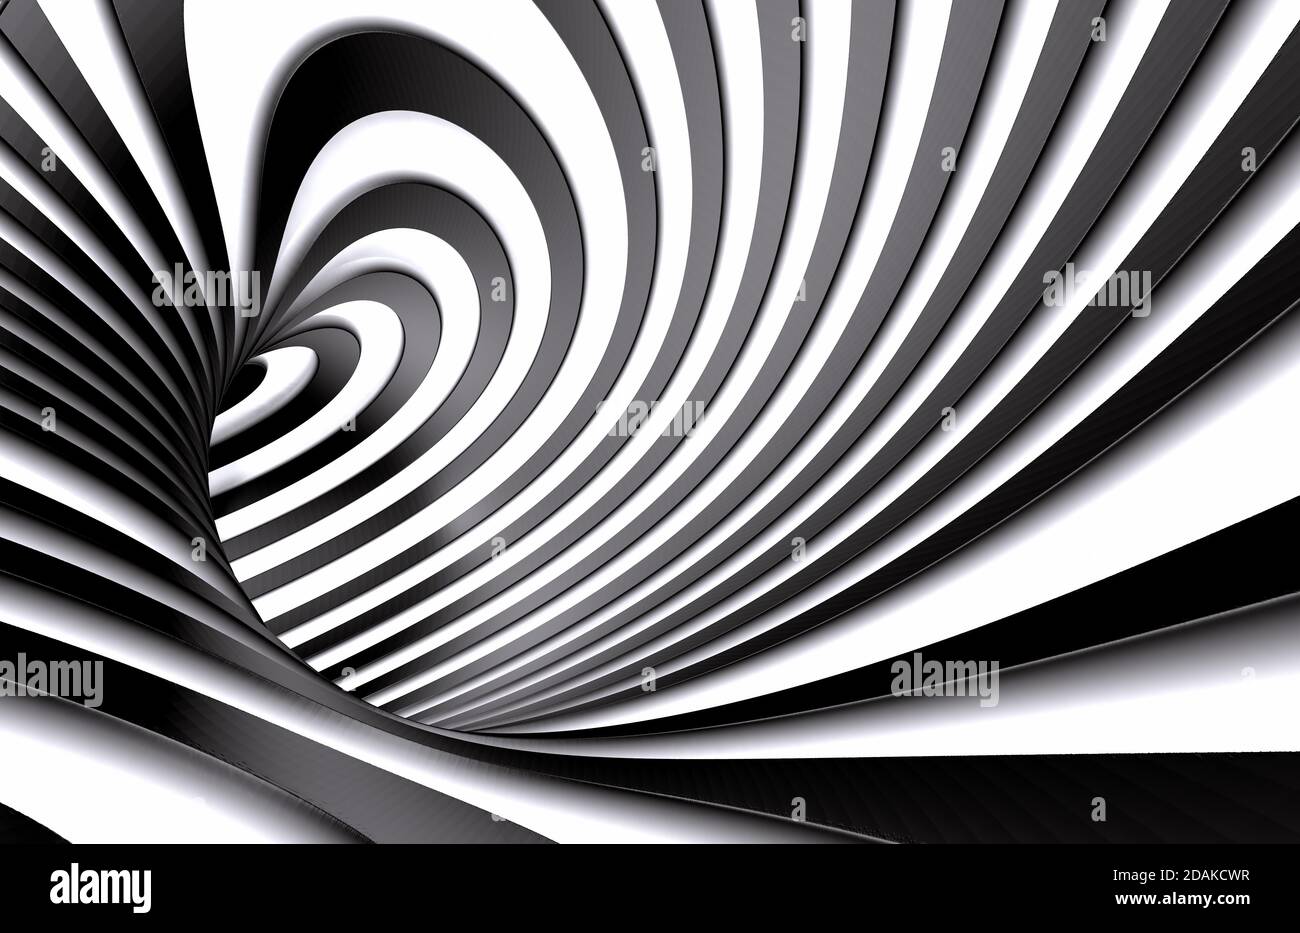 Abstrakter Tunnel oder unendliches Loch im Konzept von Schwindel. Abstrakter Spiralhintergrund in schwarz-weißem Muster. 3d-Illustration Stockfoto